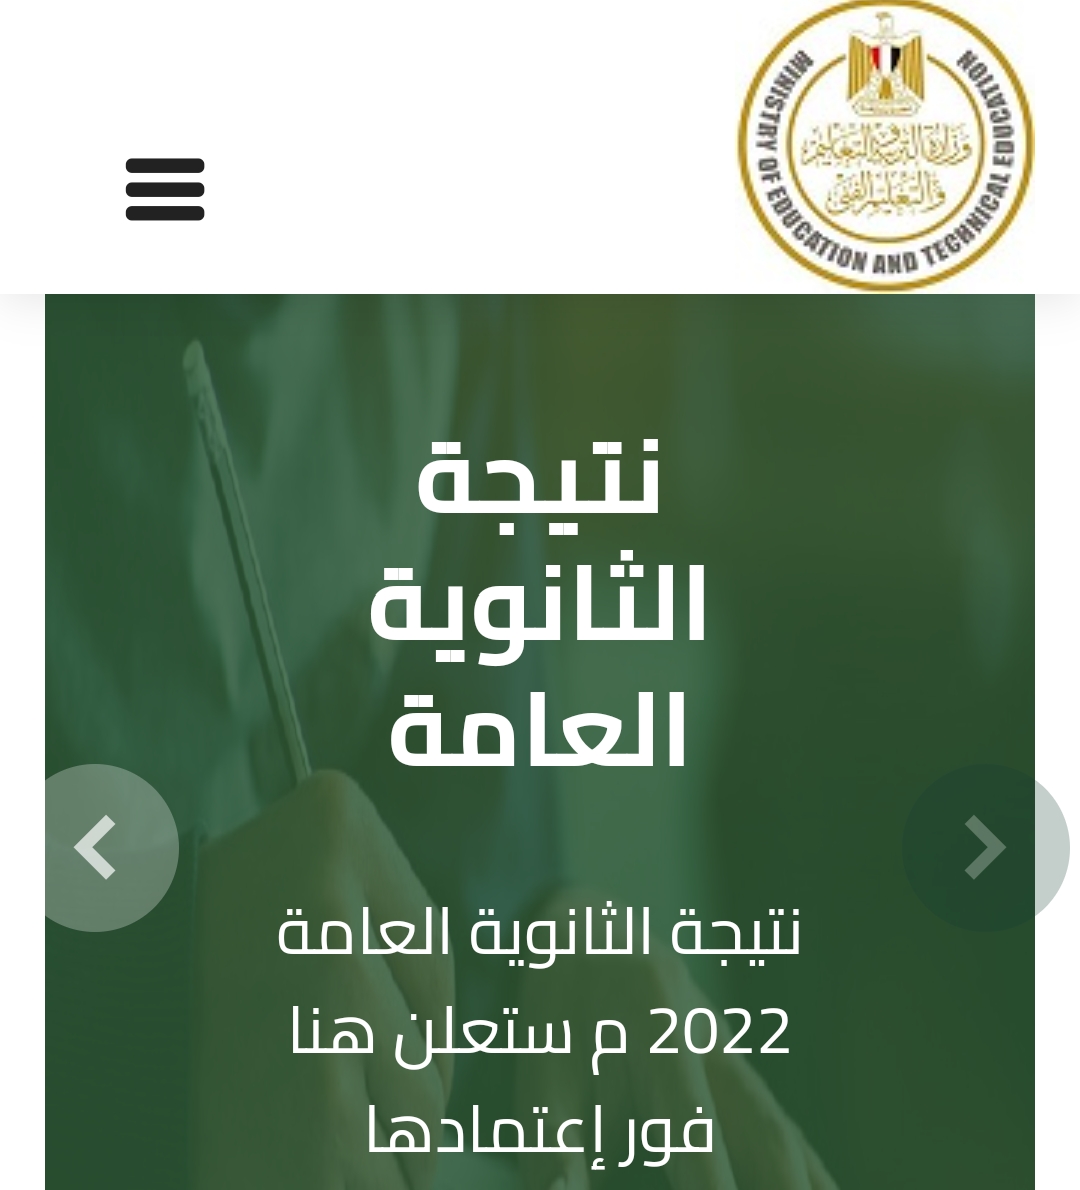 نتيجة الثانوية العامة المصرية 2022 بالاسم او رقم الجلوس